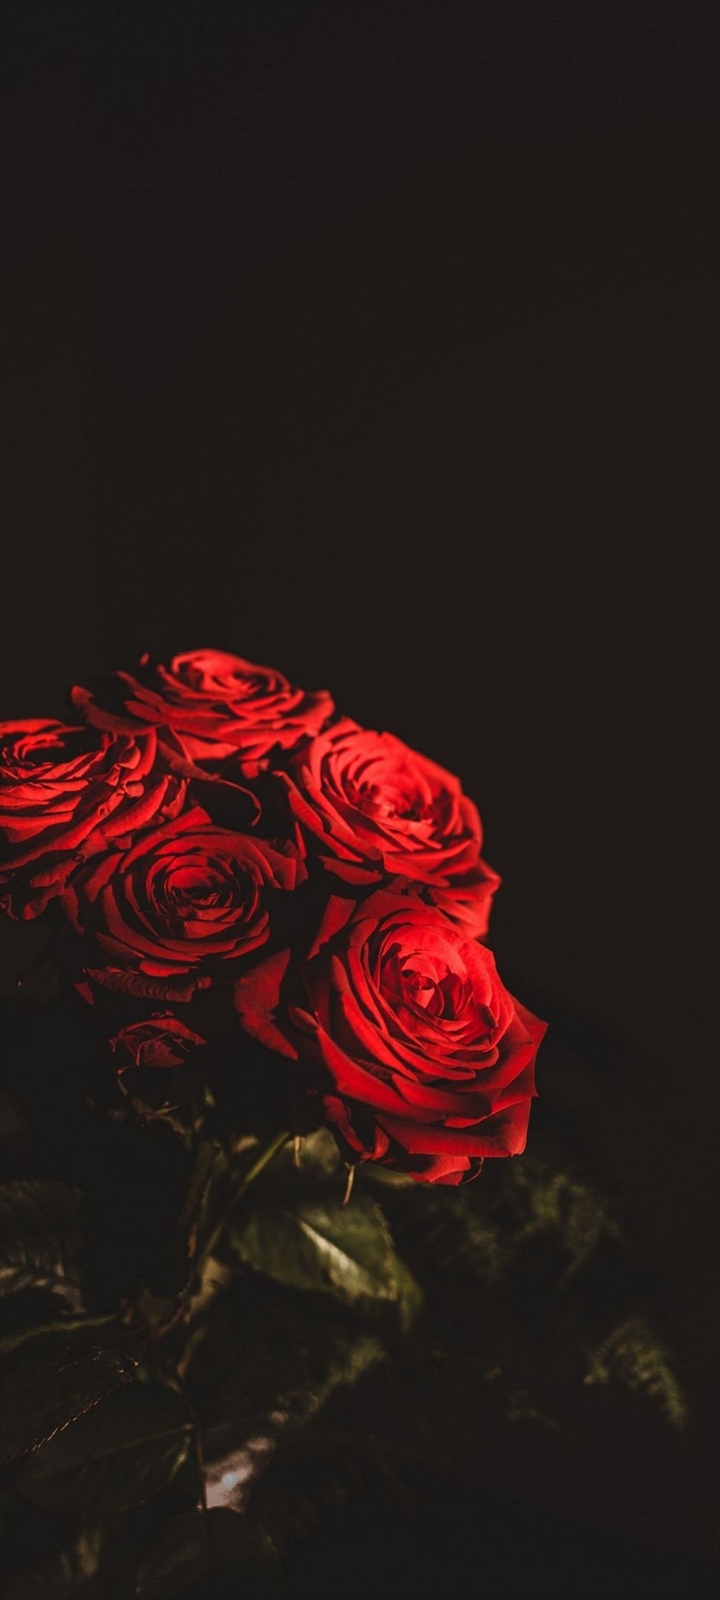 綺麗な赤い薔薇の束 Galaxy A32 5g 壁紙 待ち受け Sumaran